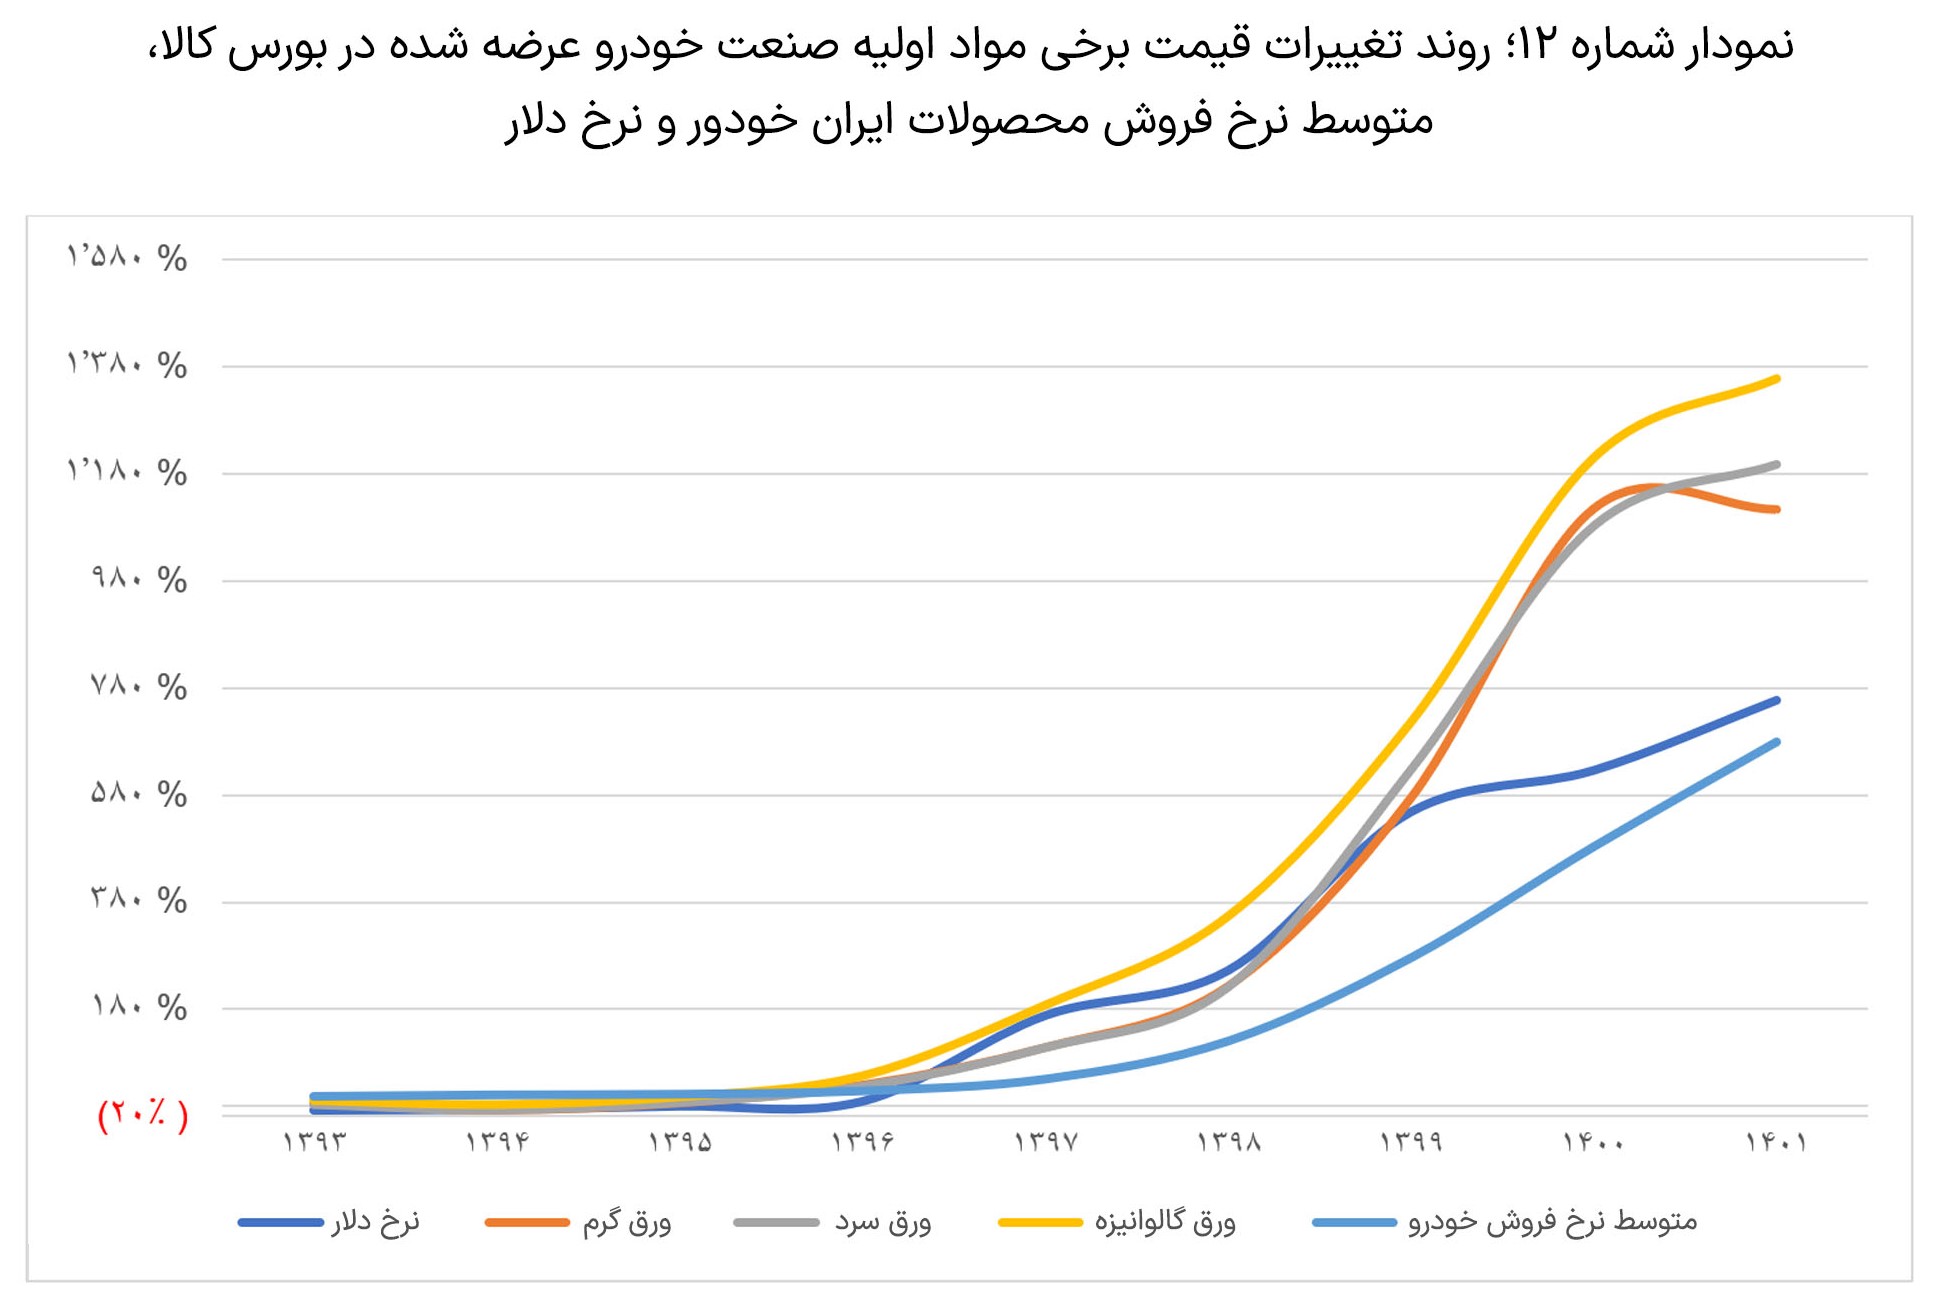 بررسی-عملکرد-دو-شرکت-ایران-خودرو-و-سایپا5-3-slide-05.jpg